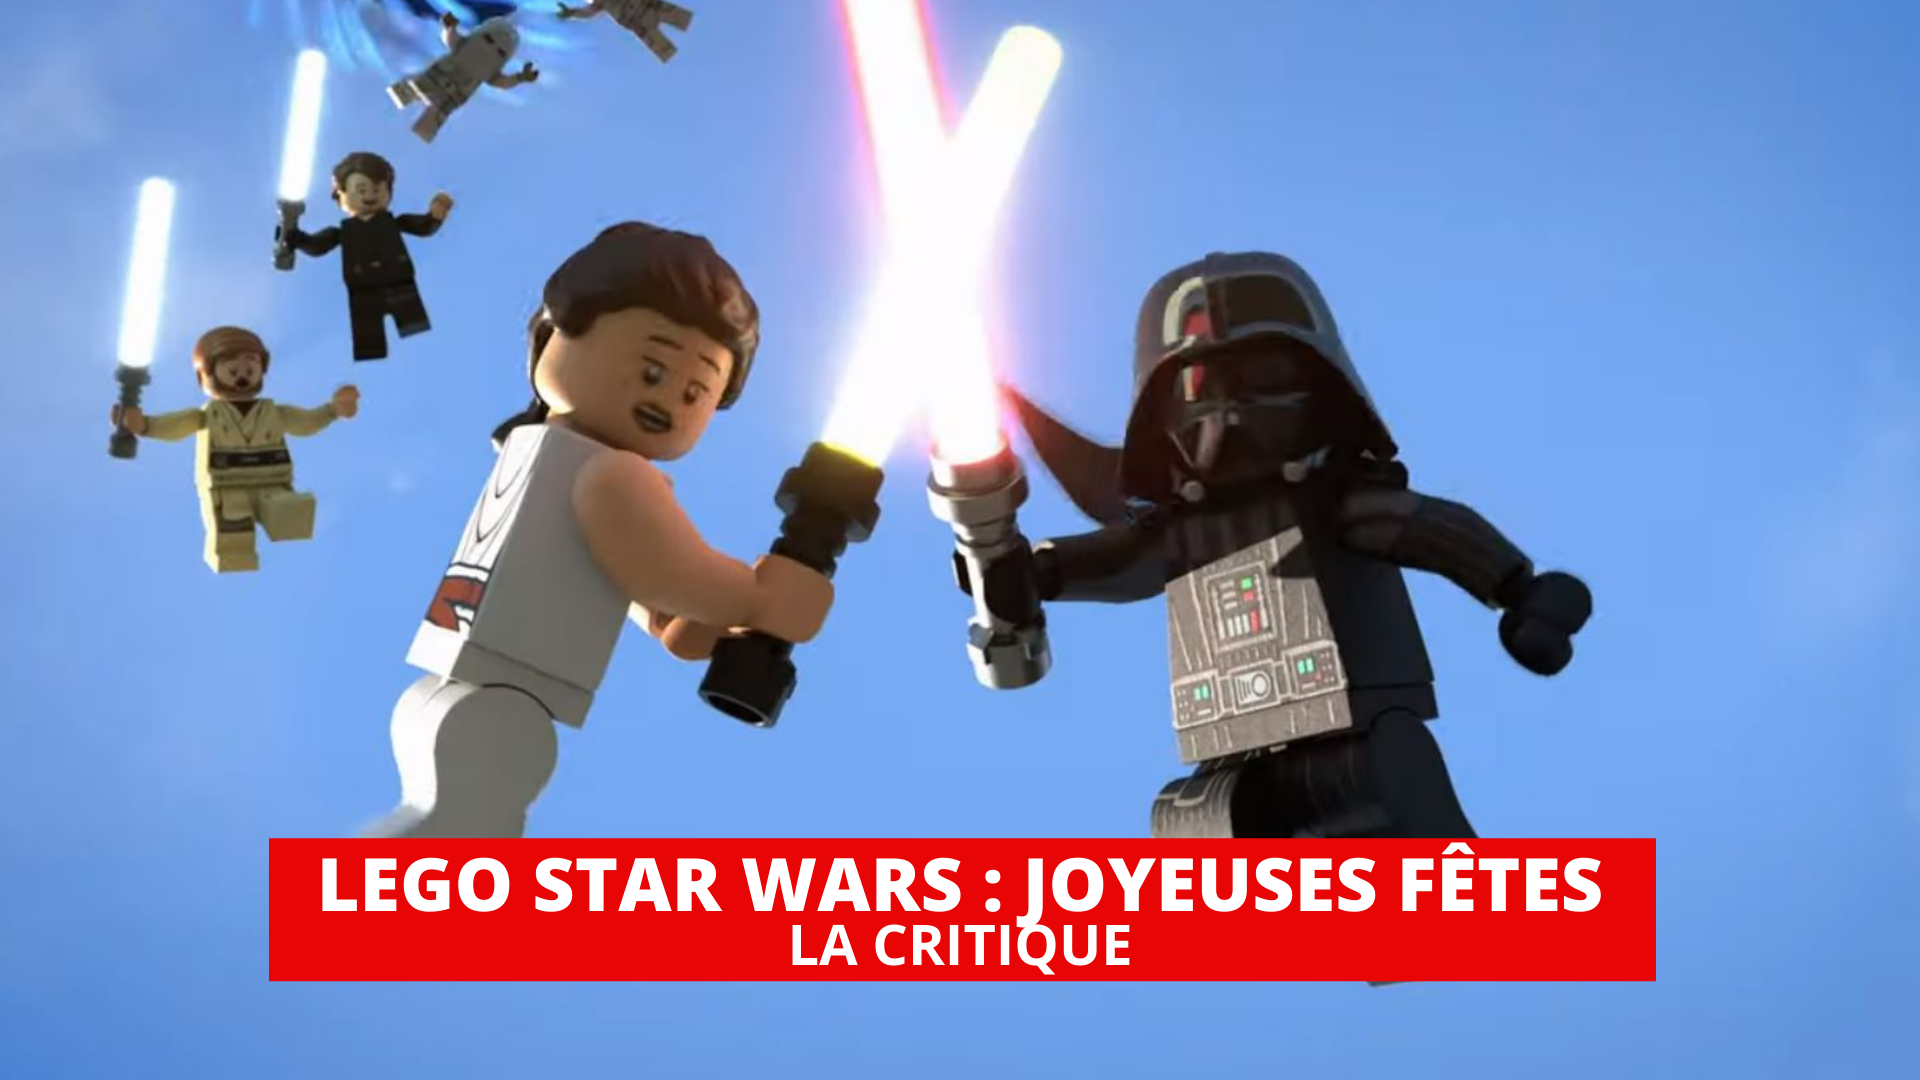 LEGO Star Wars - Joyeuses Fêtes : quand Disney se moque de nous